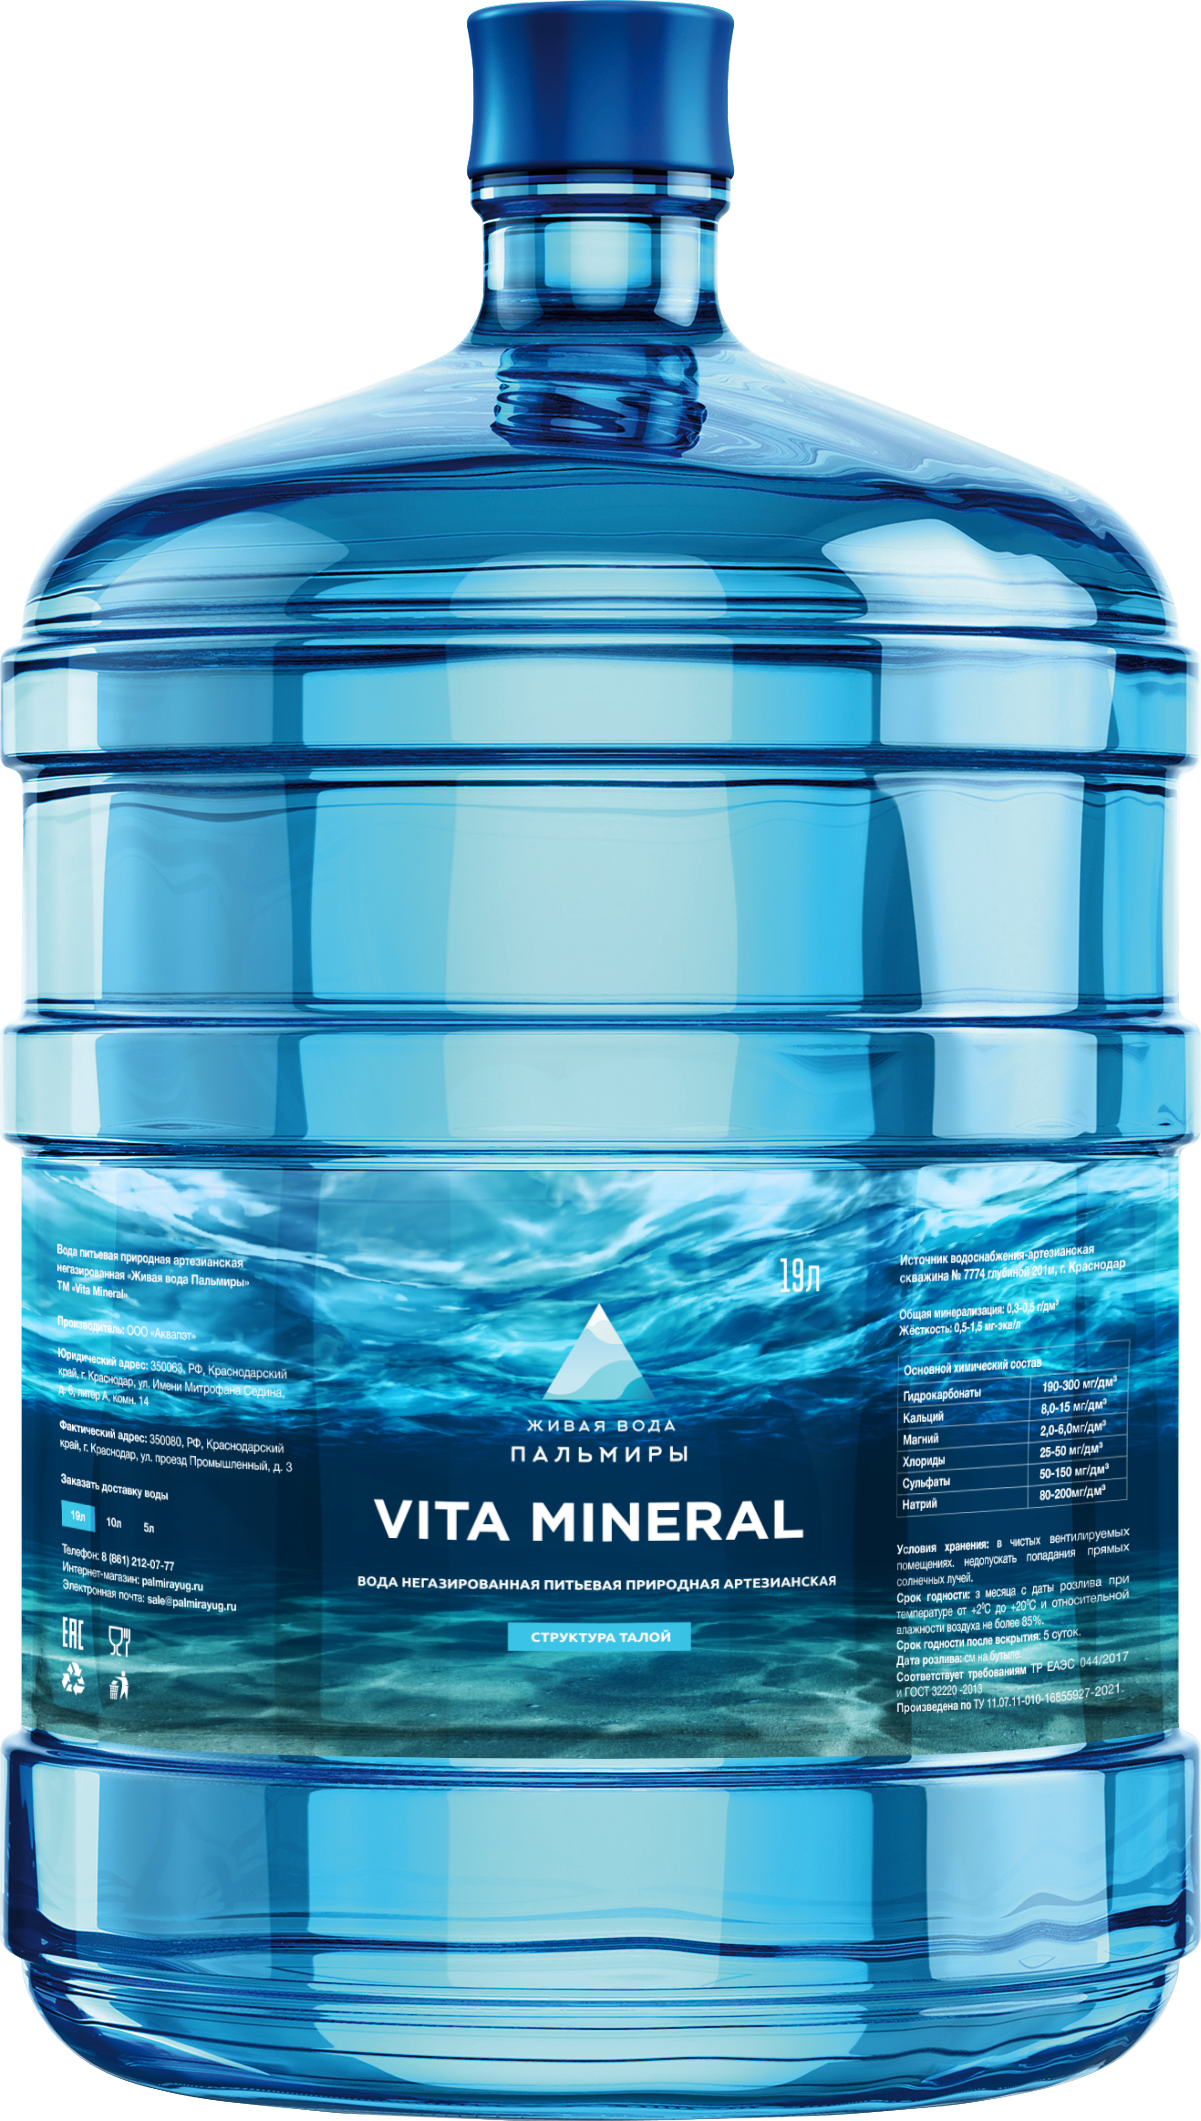 Vita Mineral